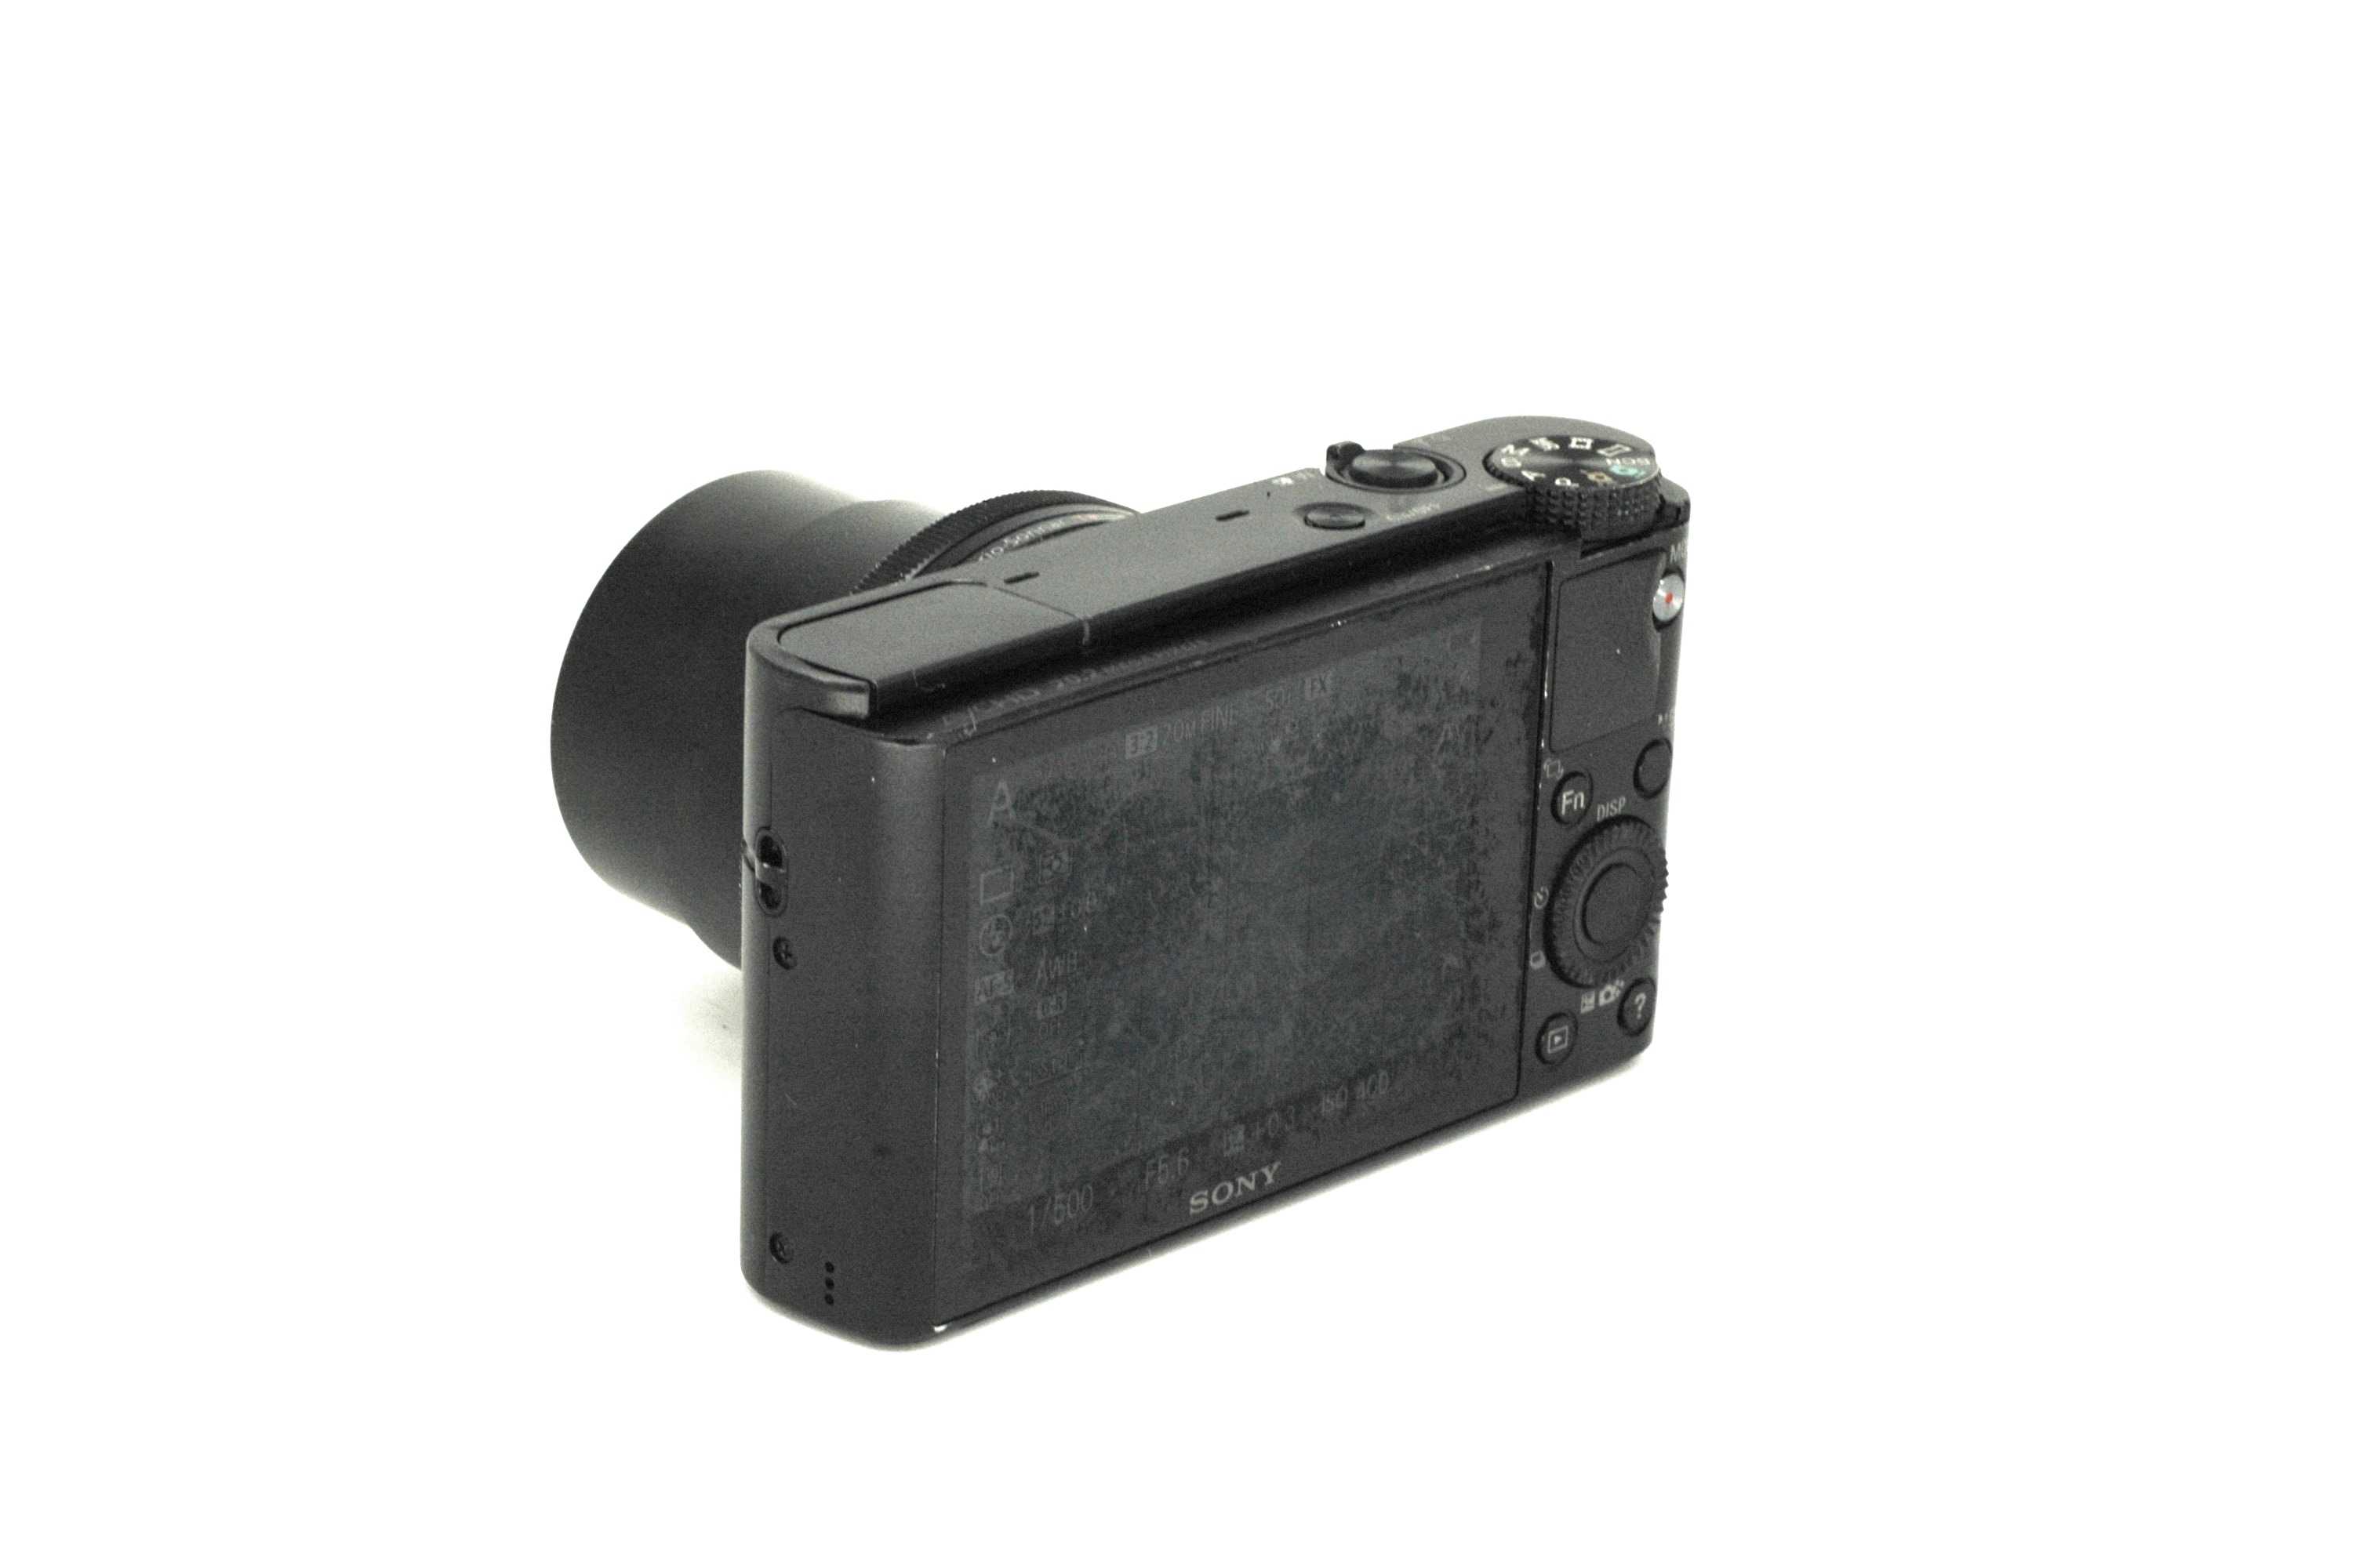 Тест sony cyber-shot dsc-w530 – обзор функций и возможностей фотоаппарата, режимы съемки, скриншоты, экранные меню, плюсы и минусы sony w530 в сравнительном обзоре четырех бюджетных компактных камер.